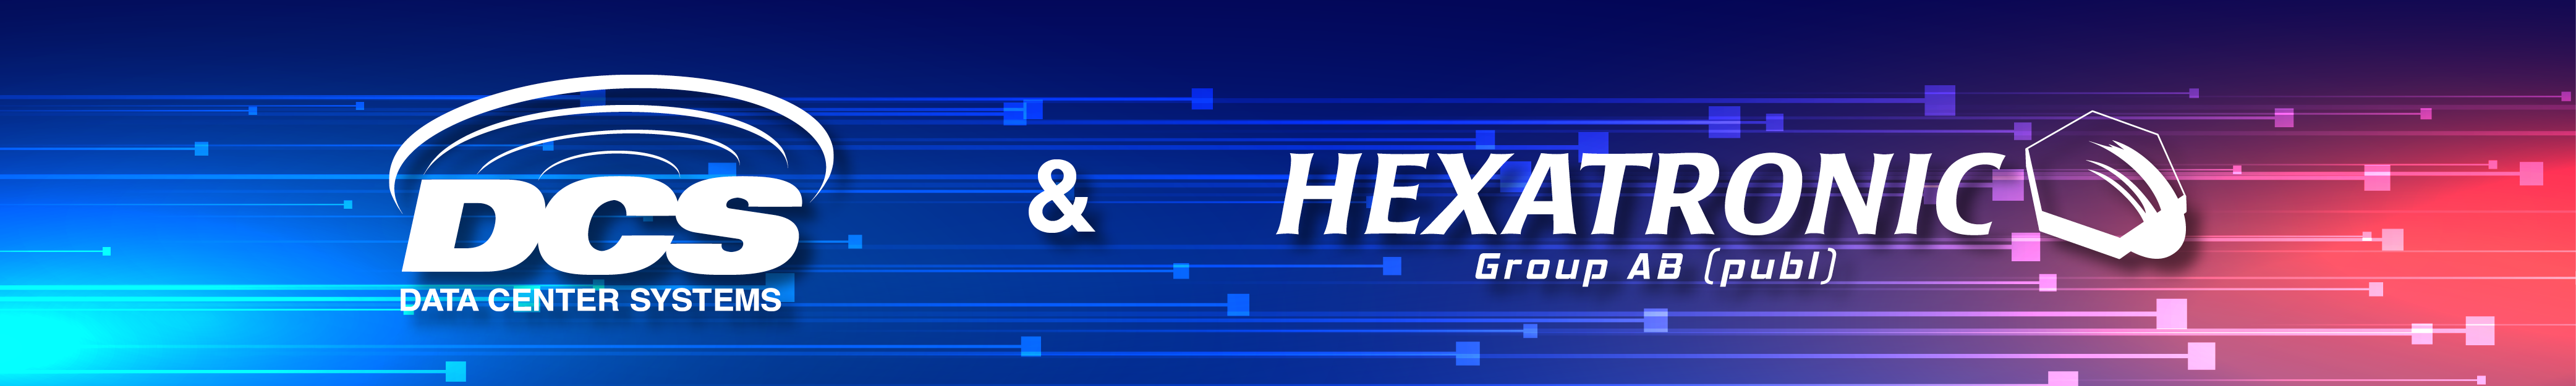 DCS-Hexatronics-Global-Presence-page-hero-3-7-22